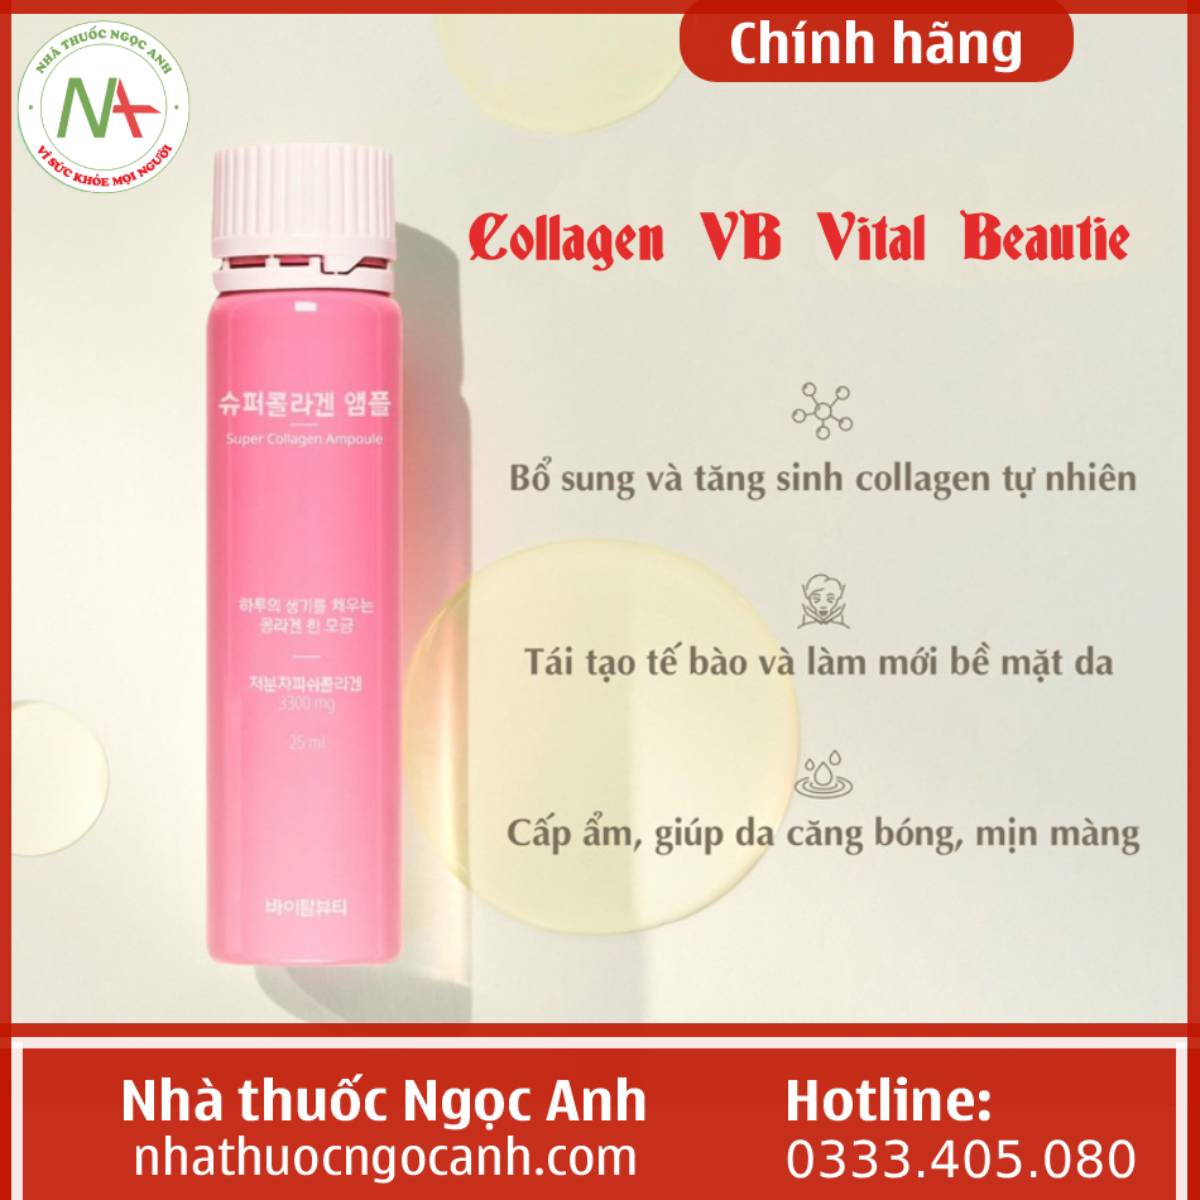 Công dụng của Collagen VB Vital Beautie